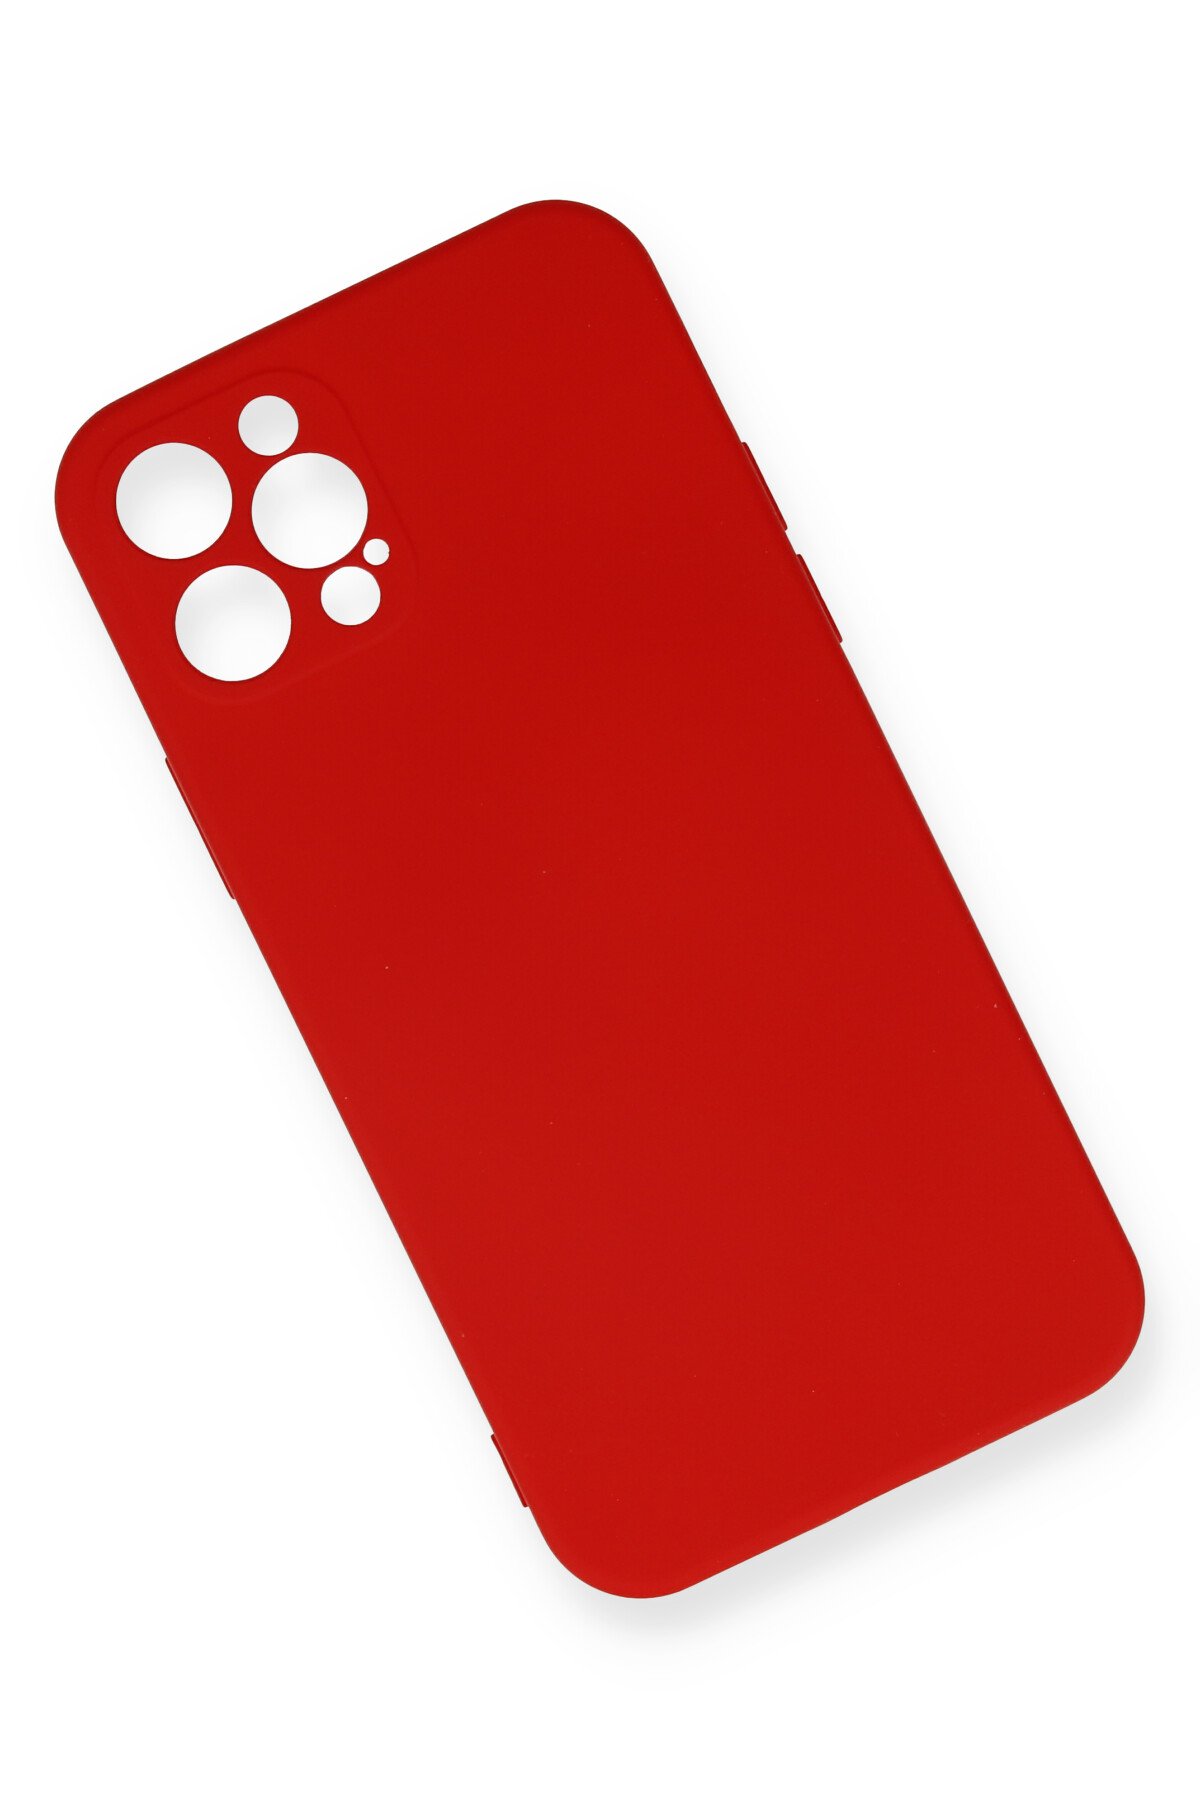 Newface iPhone 12 Pro Max Kılıf Coco Deri Standlı Kapak - Kırmızı